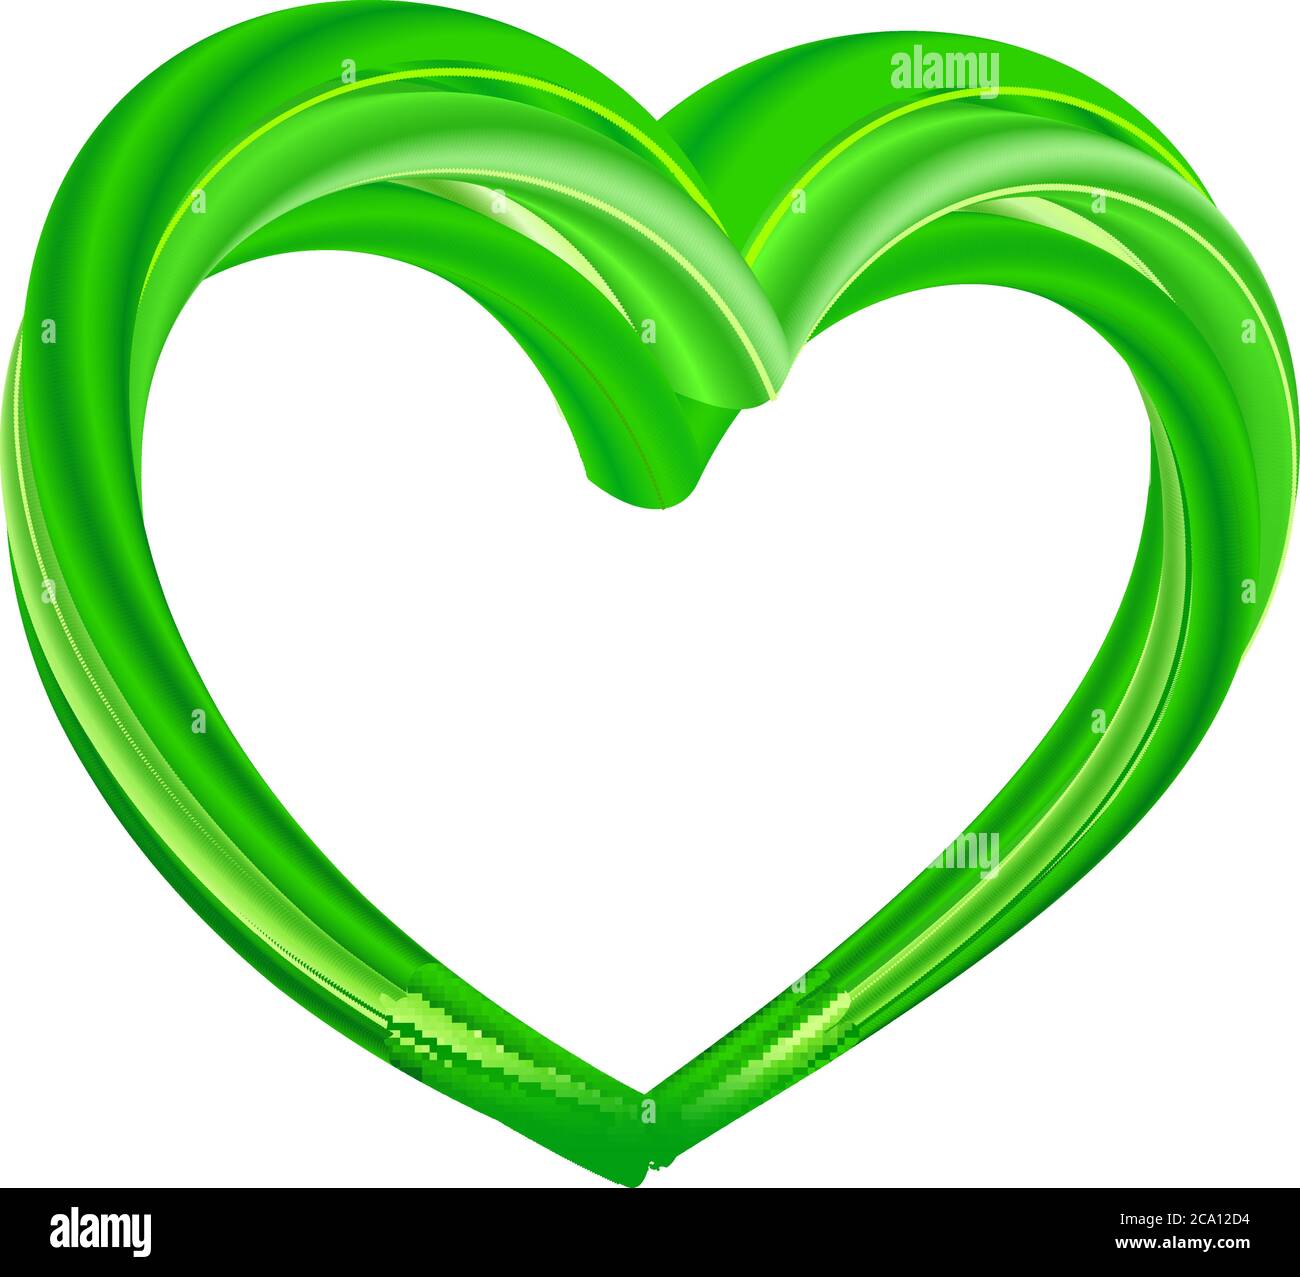 Realistisches grünes Herz - Öko, bio, vegan, natürlich. Vektor-Illustration der Liebe für natürliche Produkte Hintergrund. Symbol der Ökologie der Umwelt. Isoliert Stock Vektor